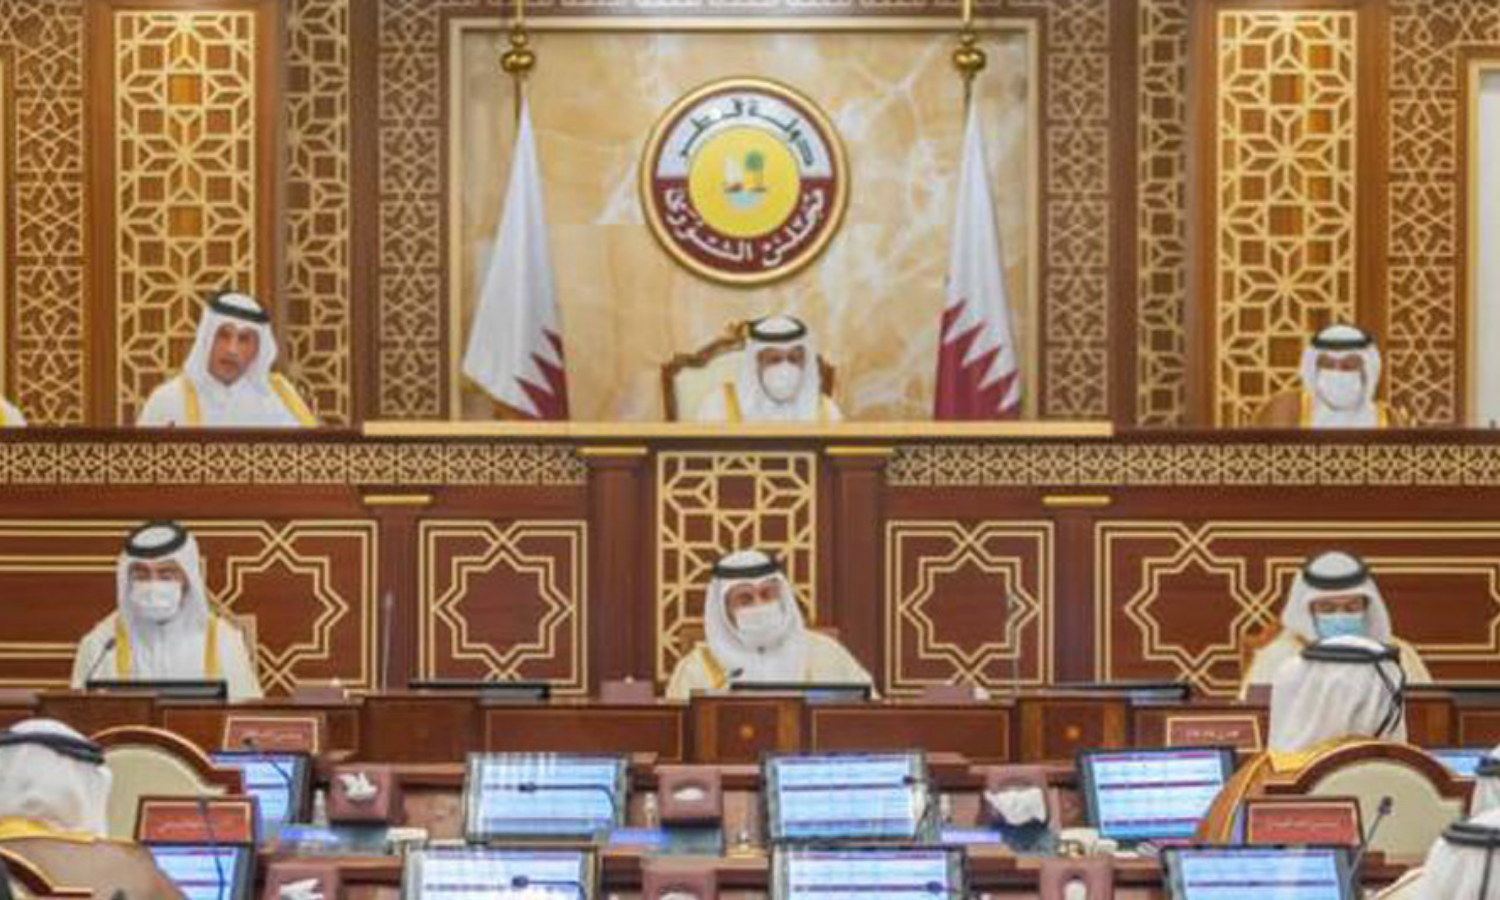 قانون انتخابي ينظم أول انتخابات تشريعية في قطر، موقع مجلس الشورى القطري، 2021.